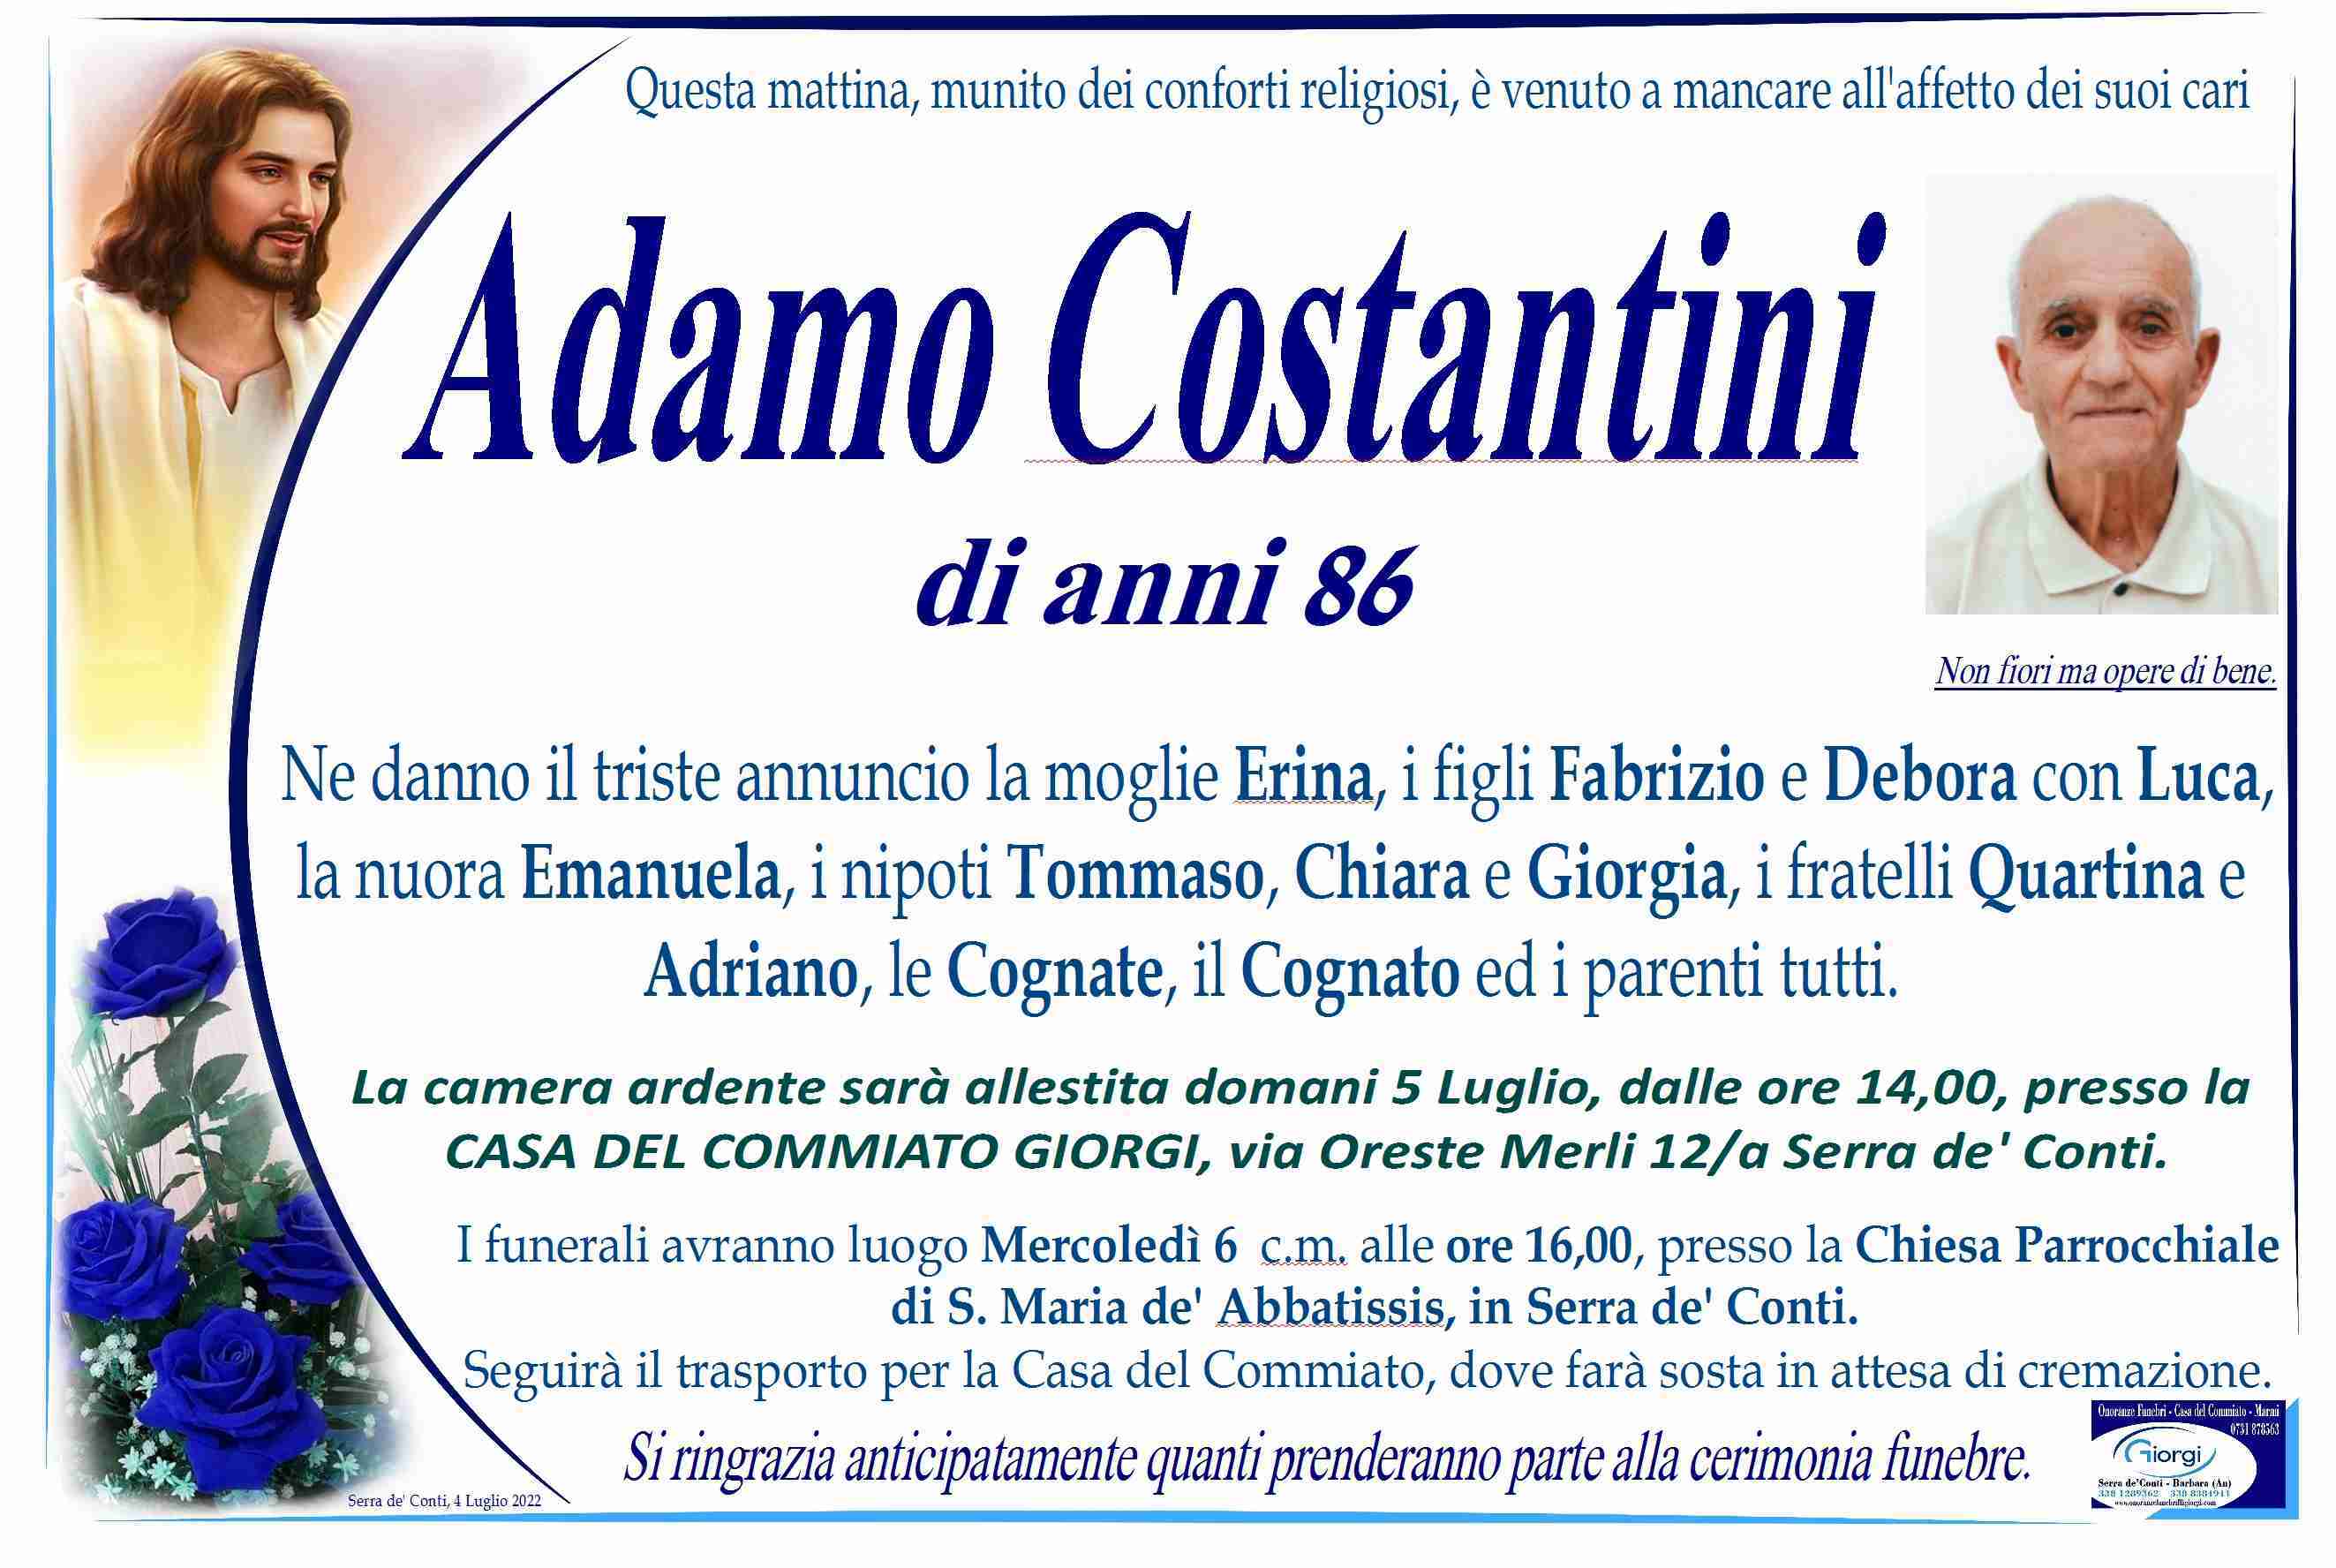 Adamo Costantini